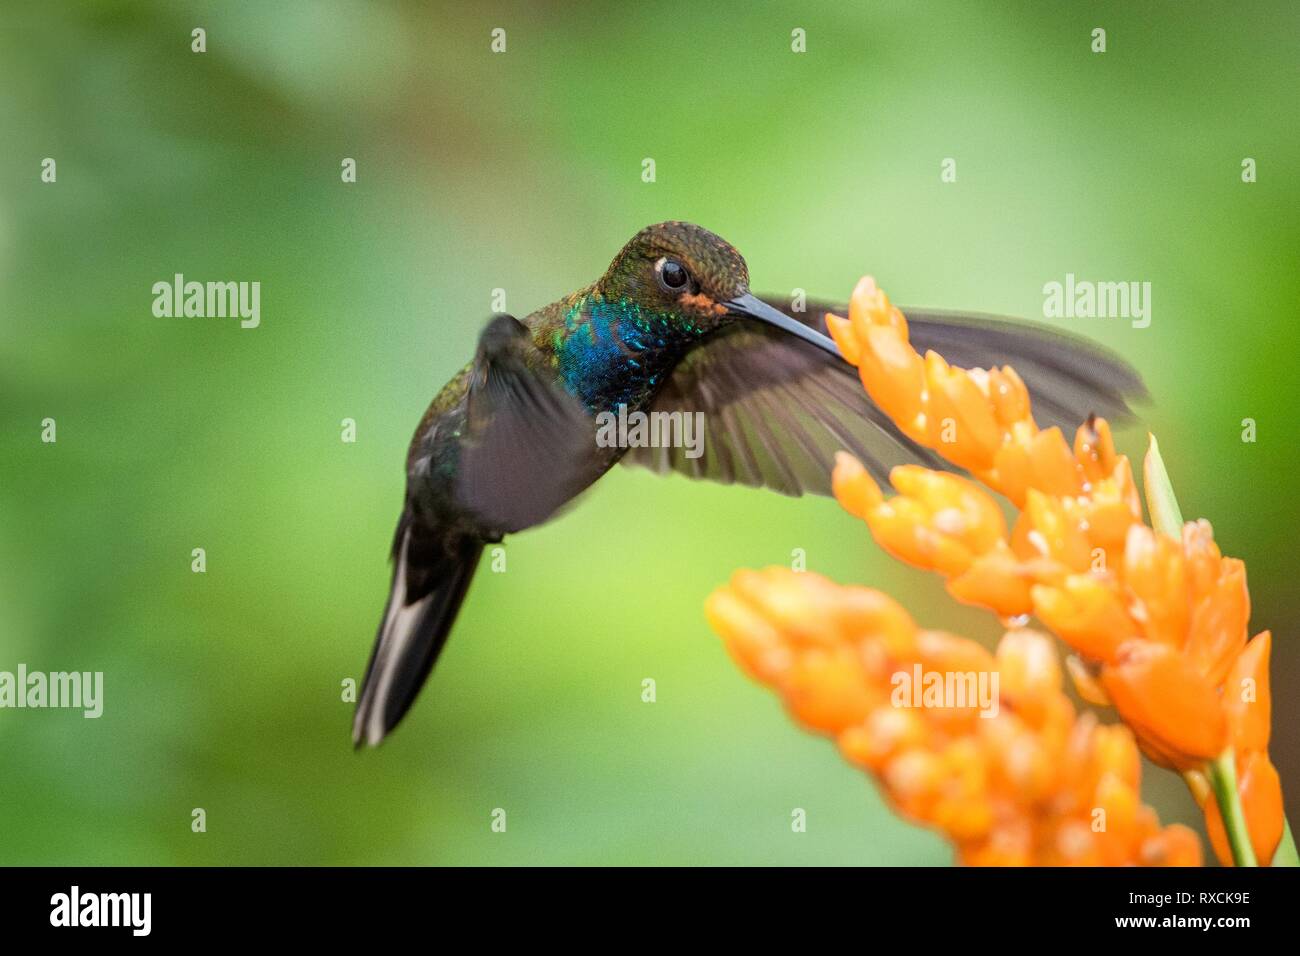 Hummingbird planant à côté de fleur orange,jardin,forêt tropicale,Brésil, oiseau en vol avec les ailes étendues,battant sucking hummingbird nectar bof Banque D'Images